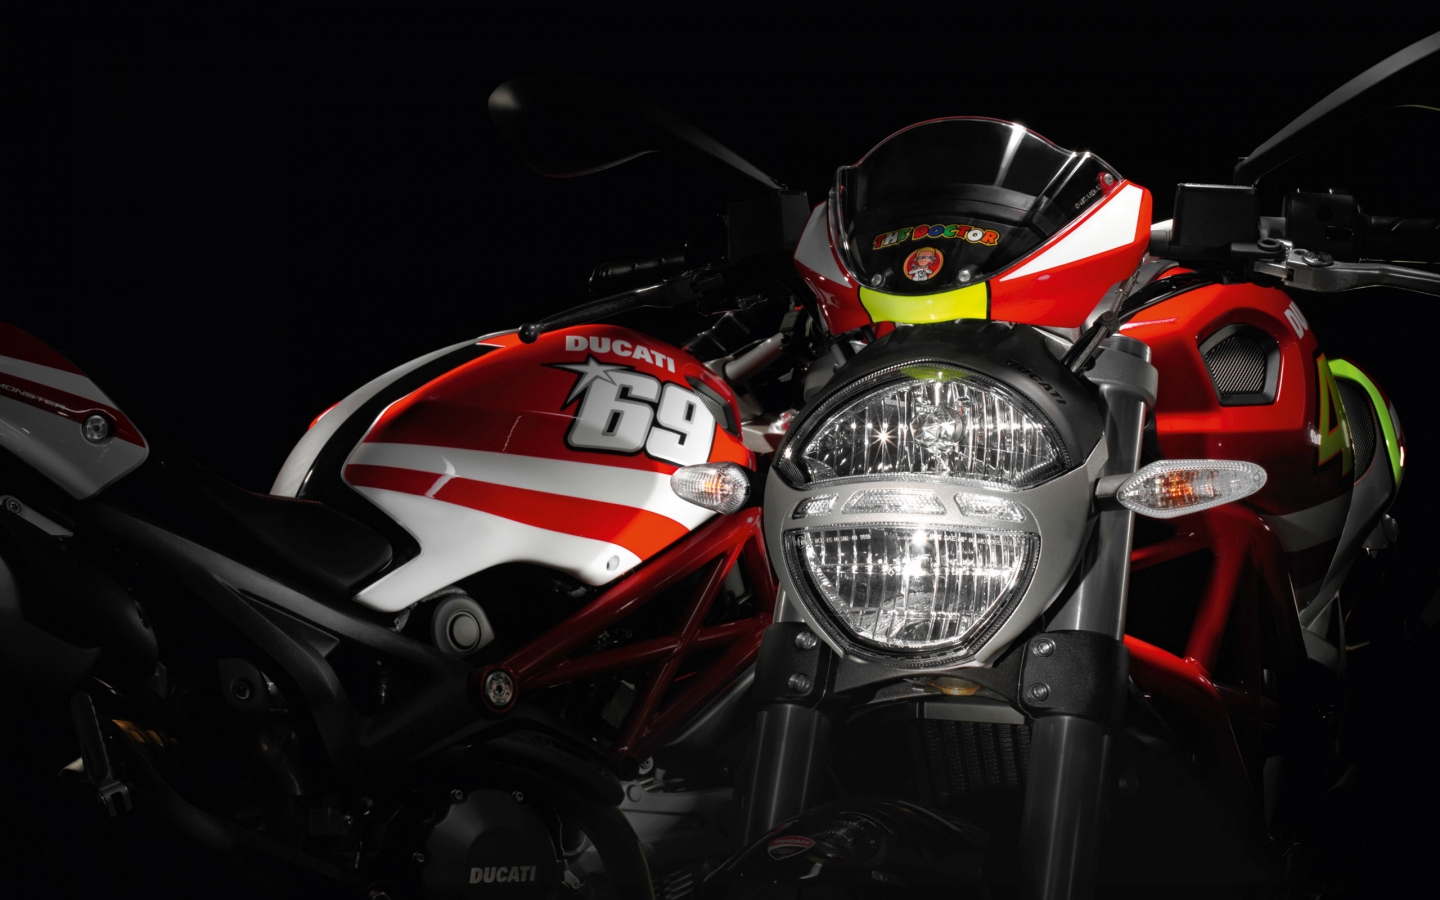 Ducati Rossi and Hayden Replica Ducati for 1440 x 900 widescreen resolution